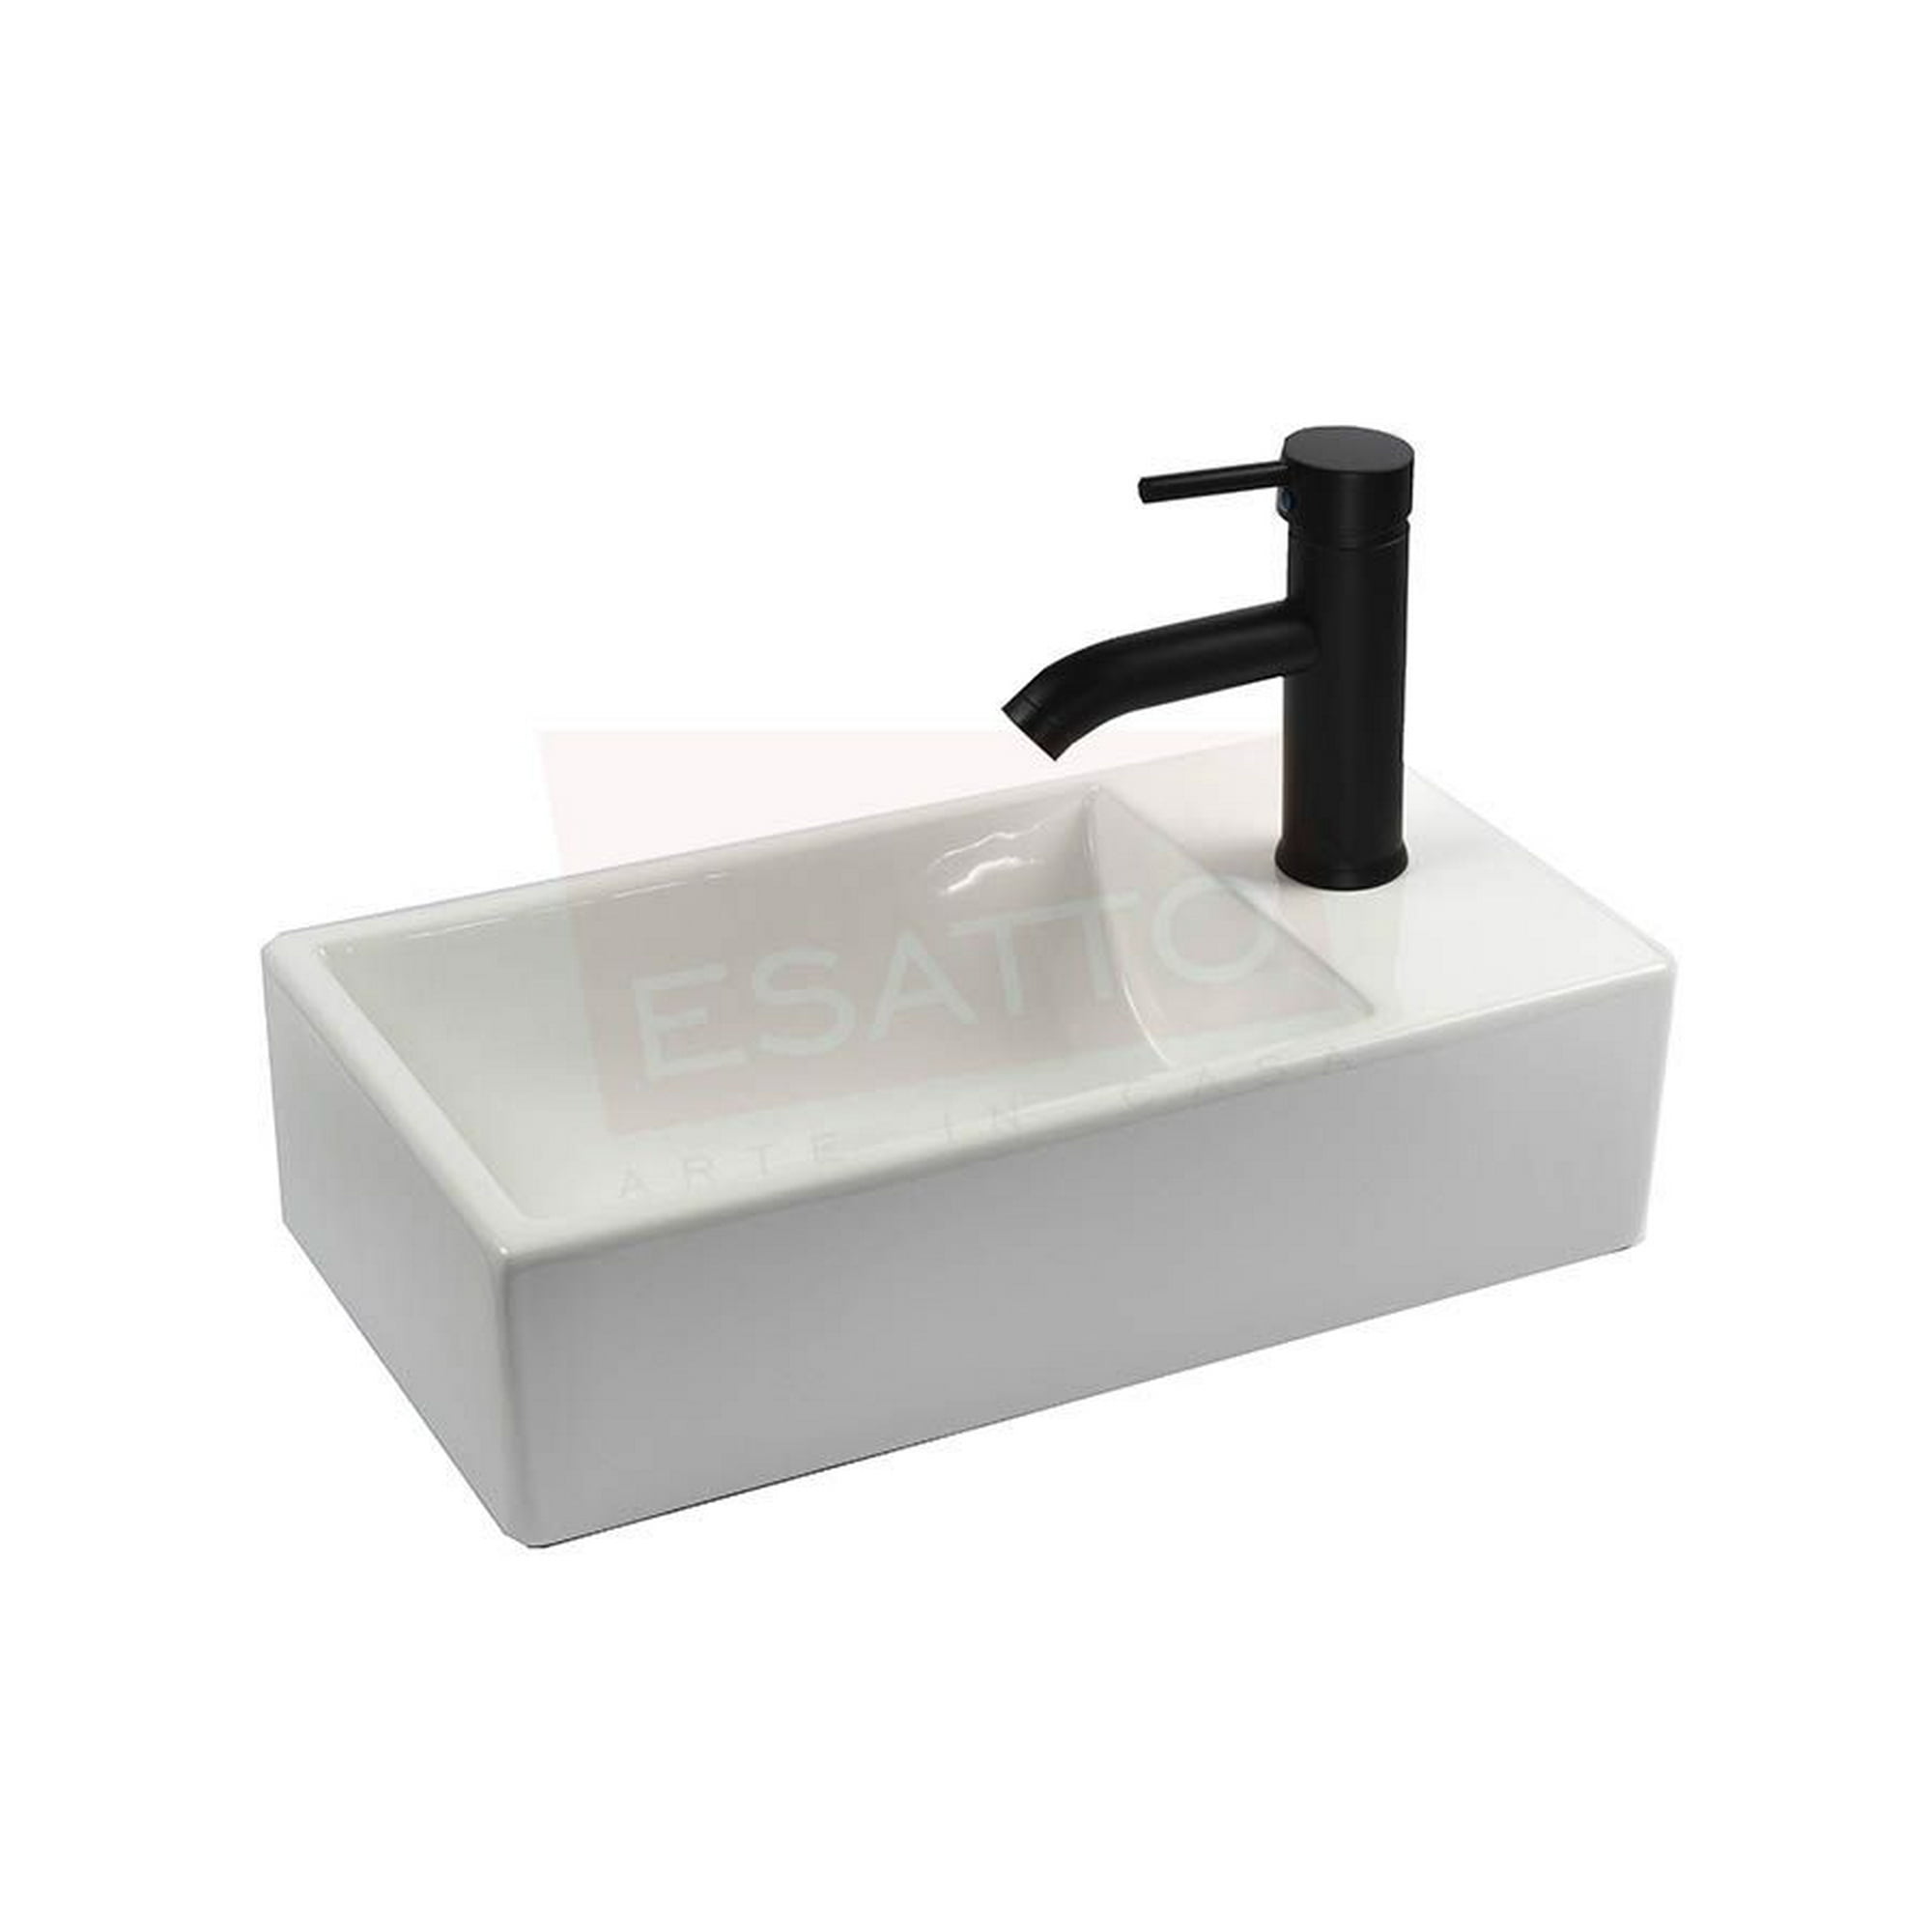 Esatto® kit mini grand n paquete de precio mejorado con lavabo llave negra y desagües esatto lavabo para baño